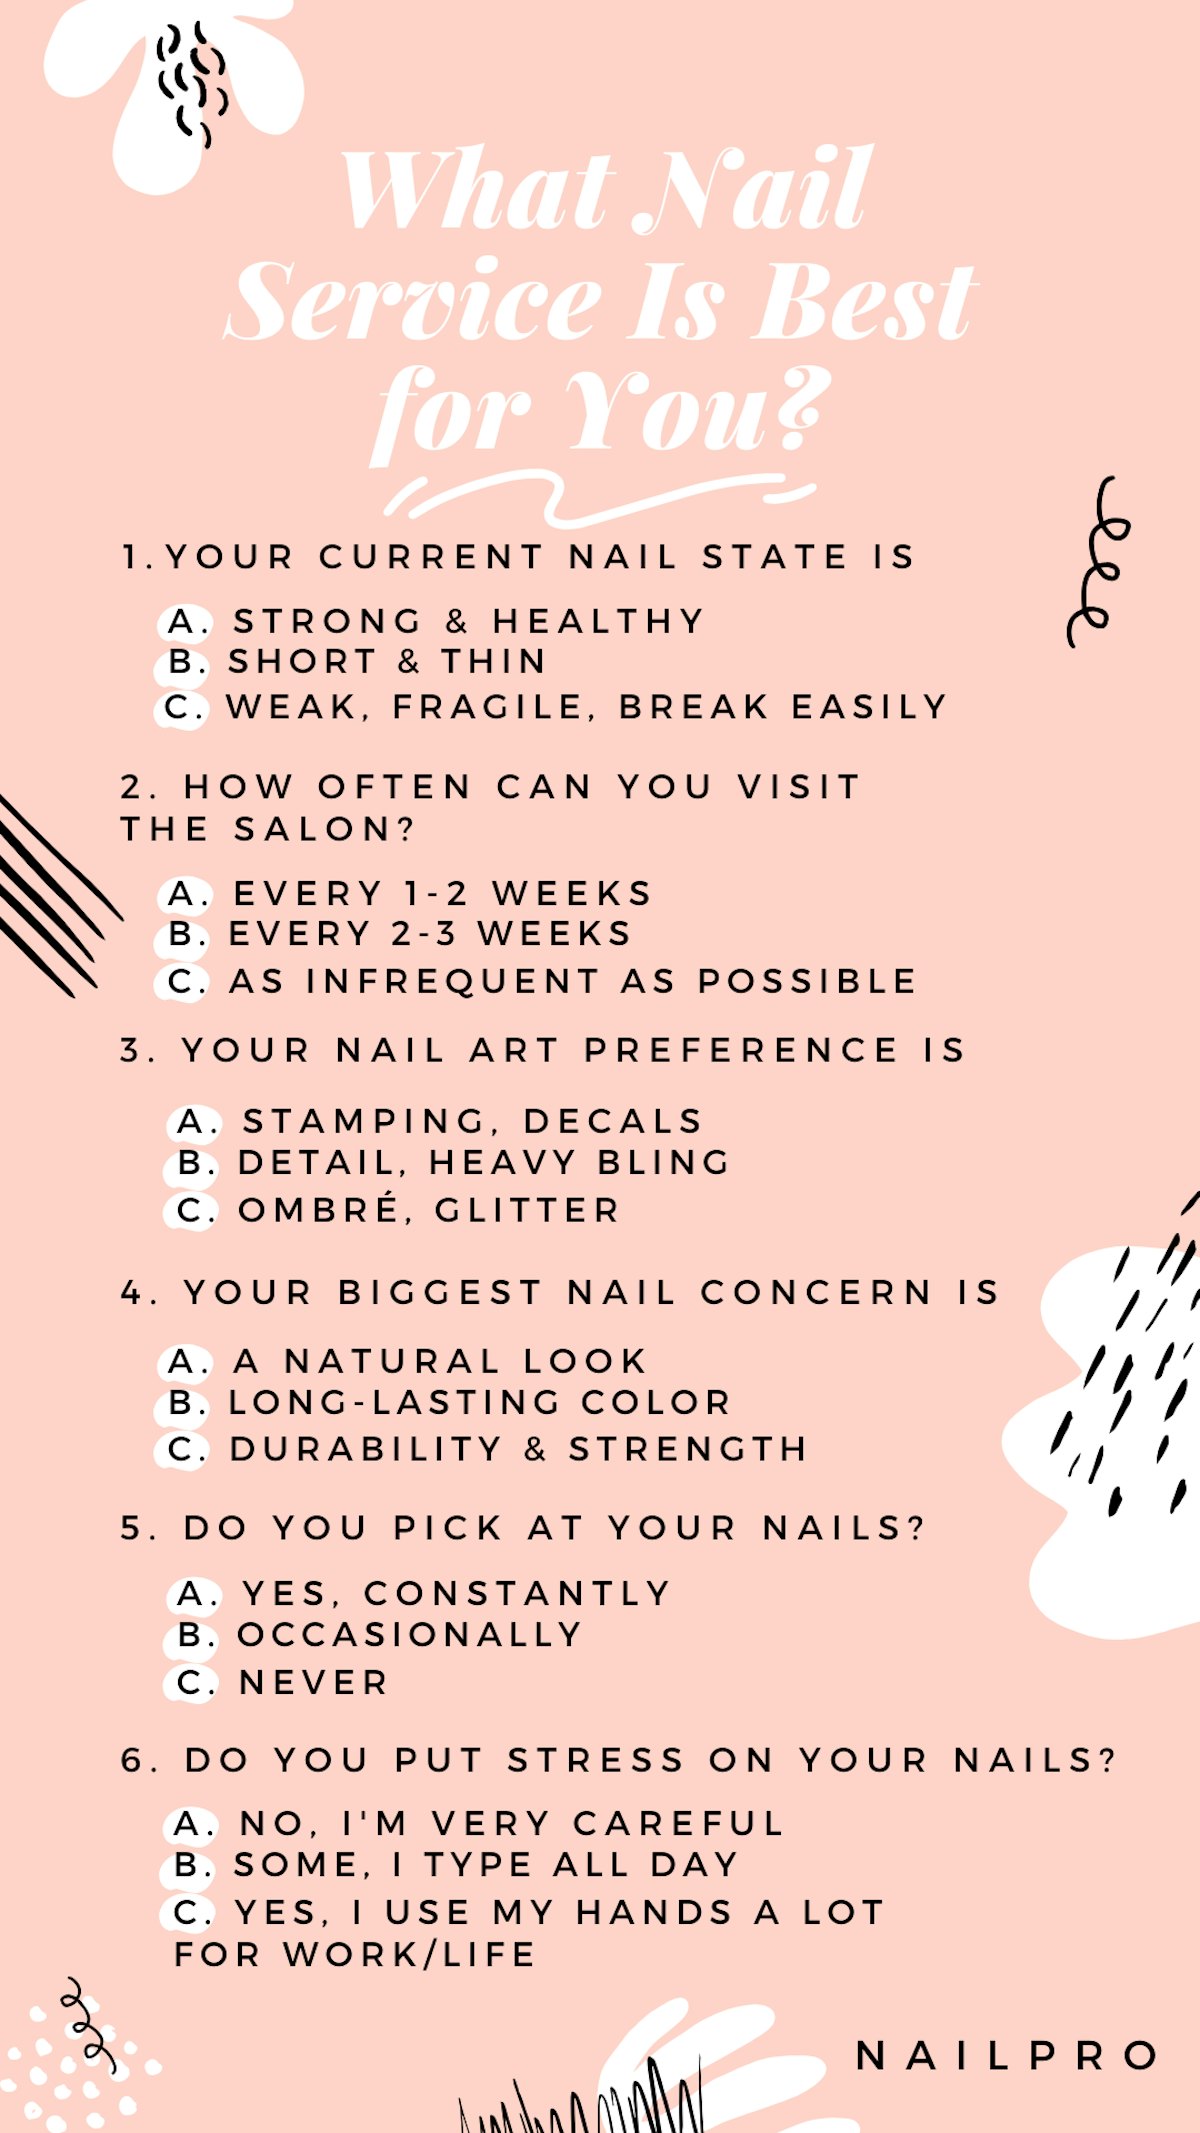 Nailpro đã trả lời tất cả câu hỏi về nail art mà khách hàng của bạn có thể đặt ra. Từ màu sơn móng tay phù hợp đến thiết kế móng tay sáng tạo, tất cả những điều này đều được giải đáp tại đây. Bạn sẽ tìm được bộ sơn móng tay hoàn hảo cho khách hàng của mình.